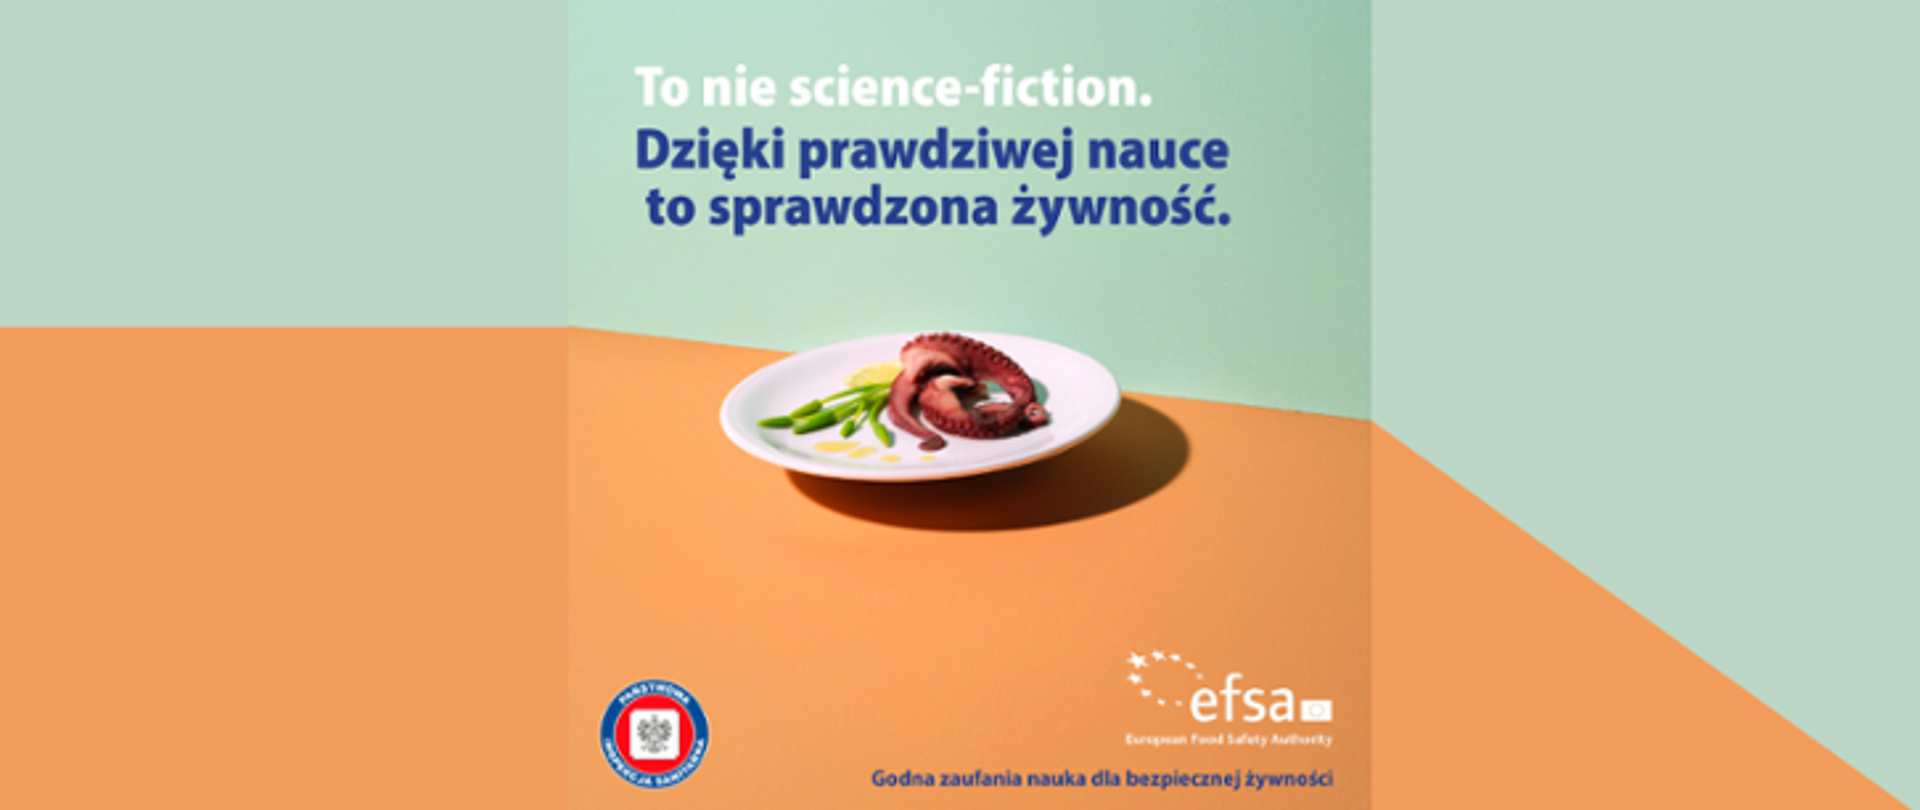 Zdjęcie przedstawia talerz ze zdrową żywnością, nad nim napis To nie science-fiction. Dzięki prawdziwej nauce to sprawdzona żywność. Pod talerzem logo Inspekcji Sanitarnej oraz Europejskiego Urzędu ds. Bezpieczeństwa Żywności (EFSA). Tło oliwkowo-pomarańczowe. 